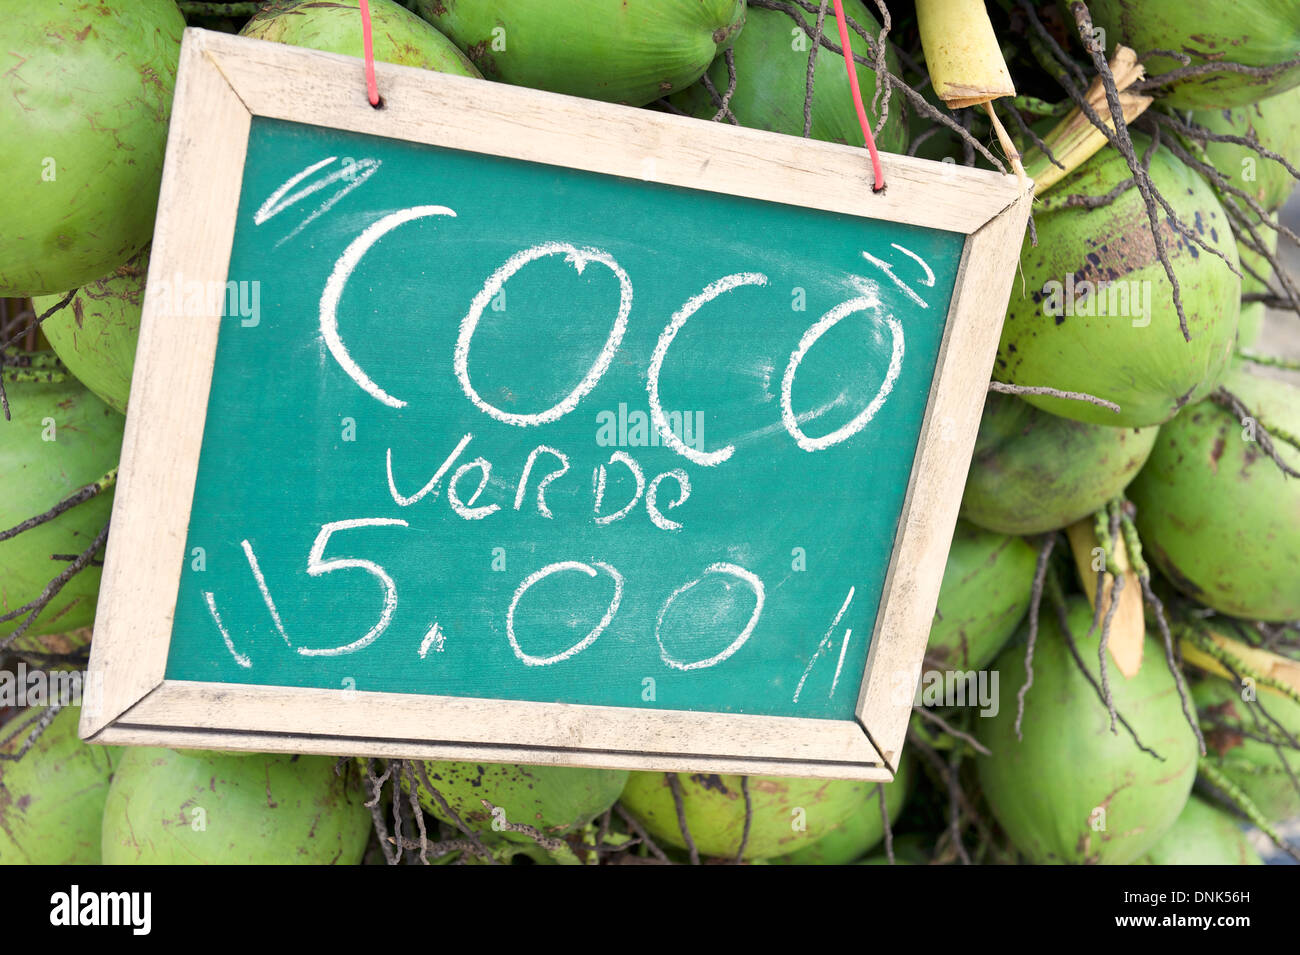 Brasilianische Zeichen Werbung Preis grüne Kokosnüsse in Rio De Janeiro Brasilien für fünf realen trinken Stockfoto